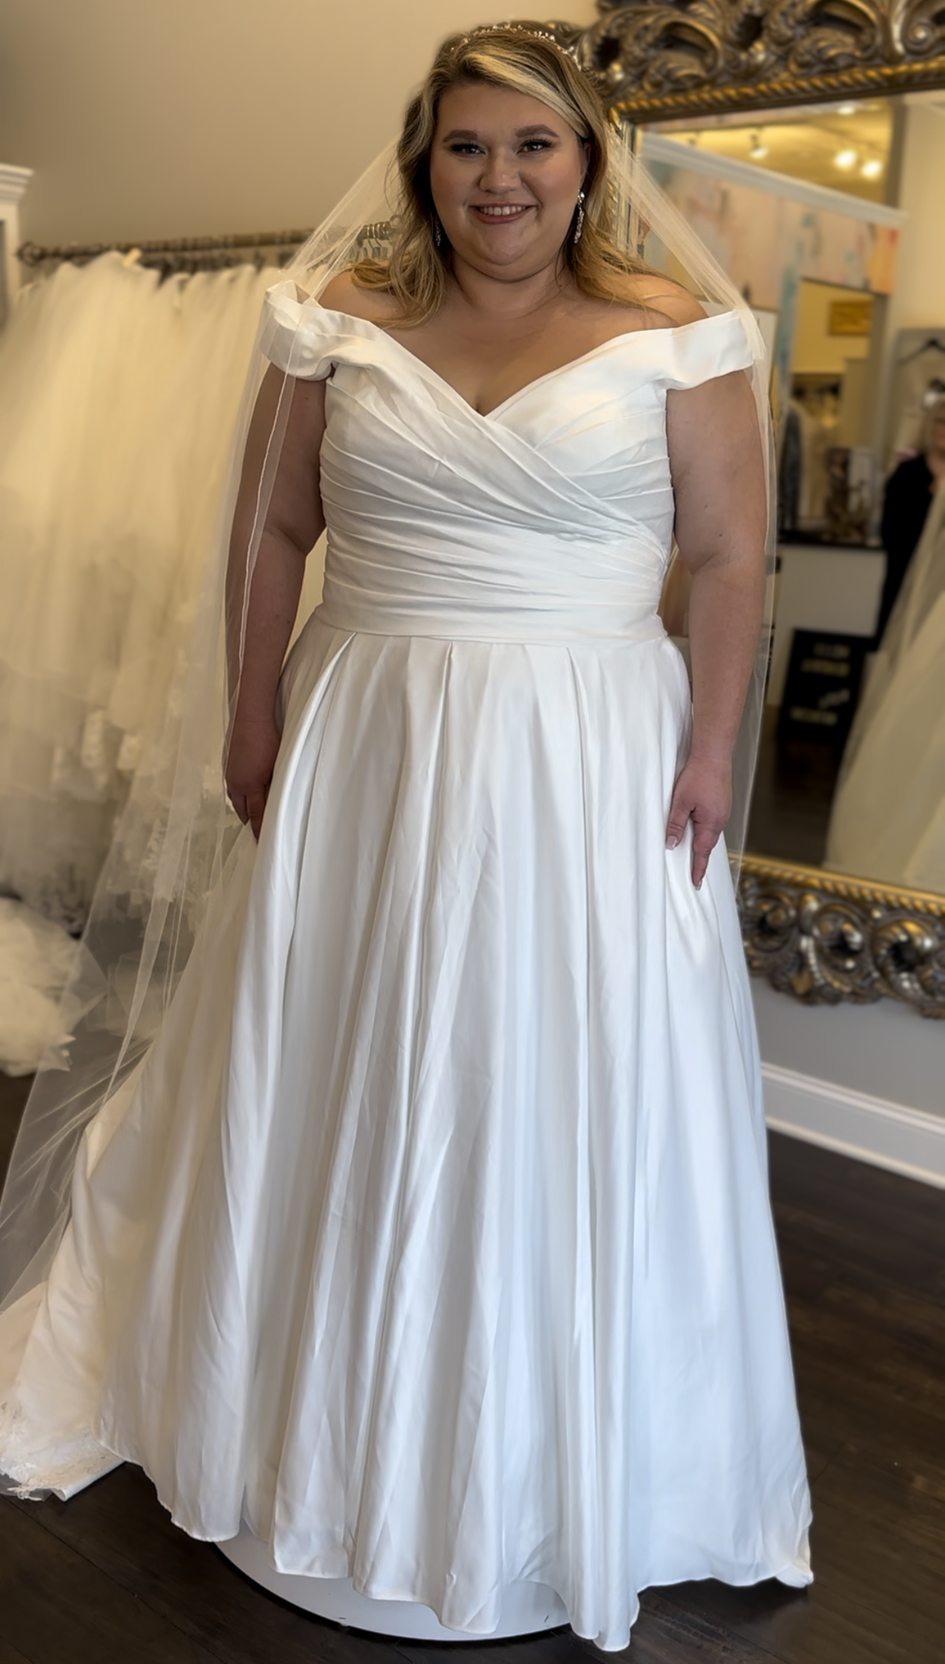 Sydneys Closet 'Veronica Wedding Dress' SC5257